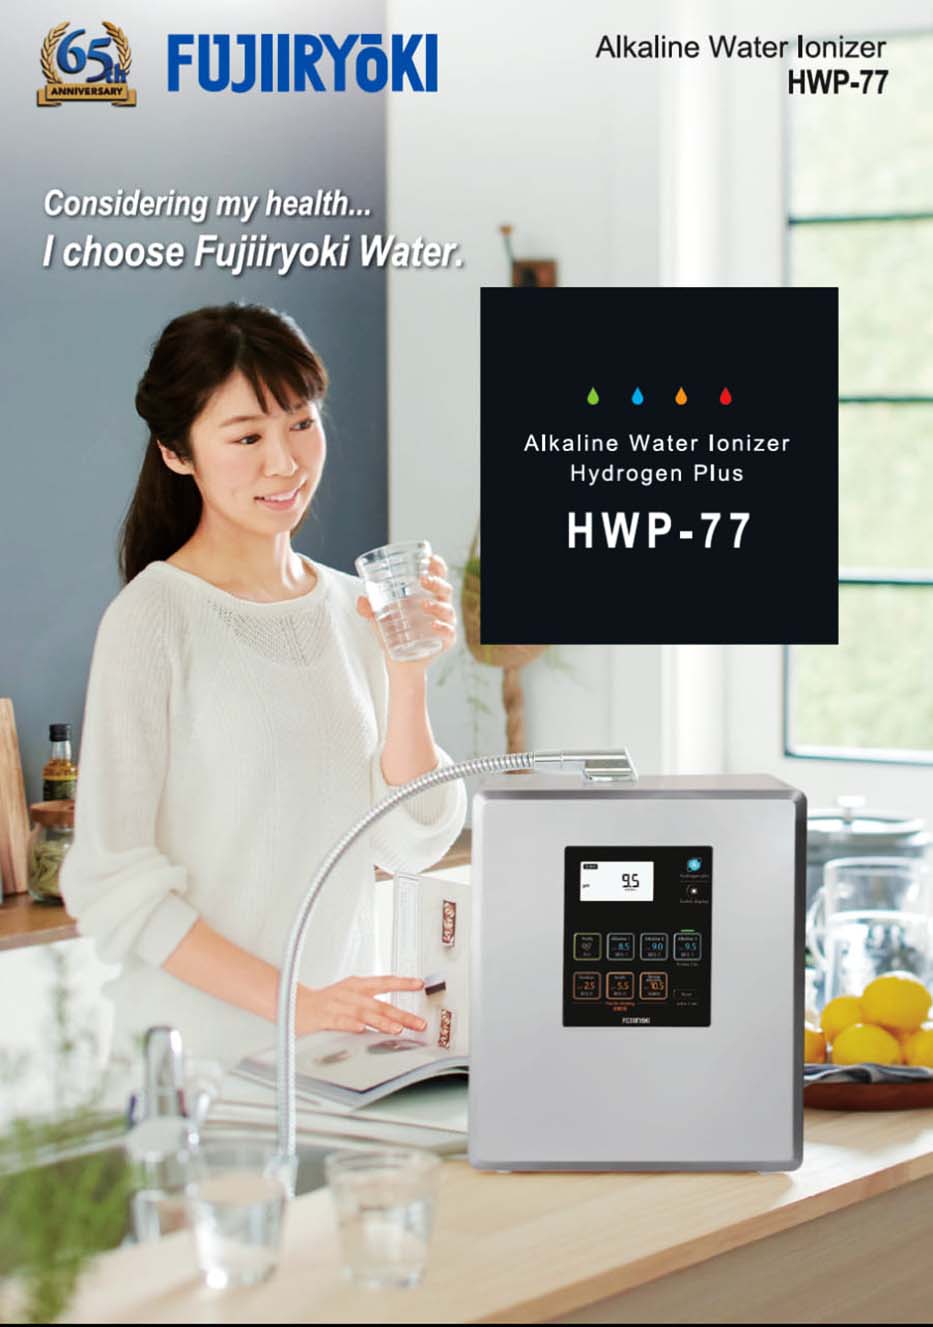 Máy Fujiiryoki HWP-77 giúp chăm sóc sức khỏe hiệu quả